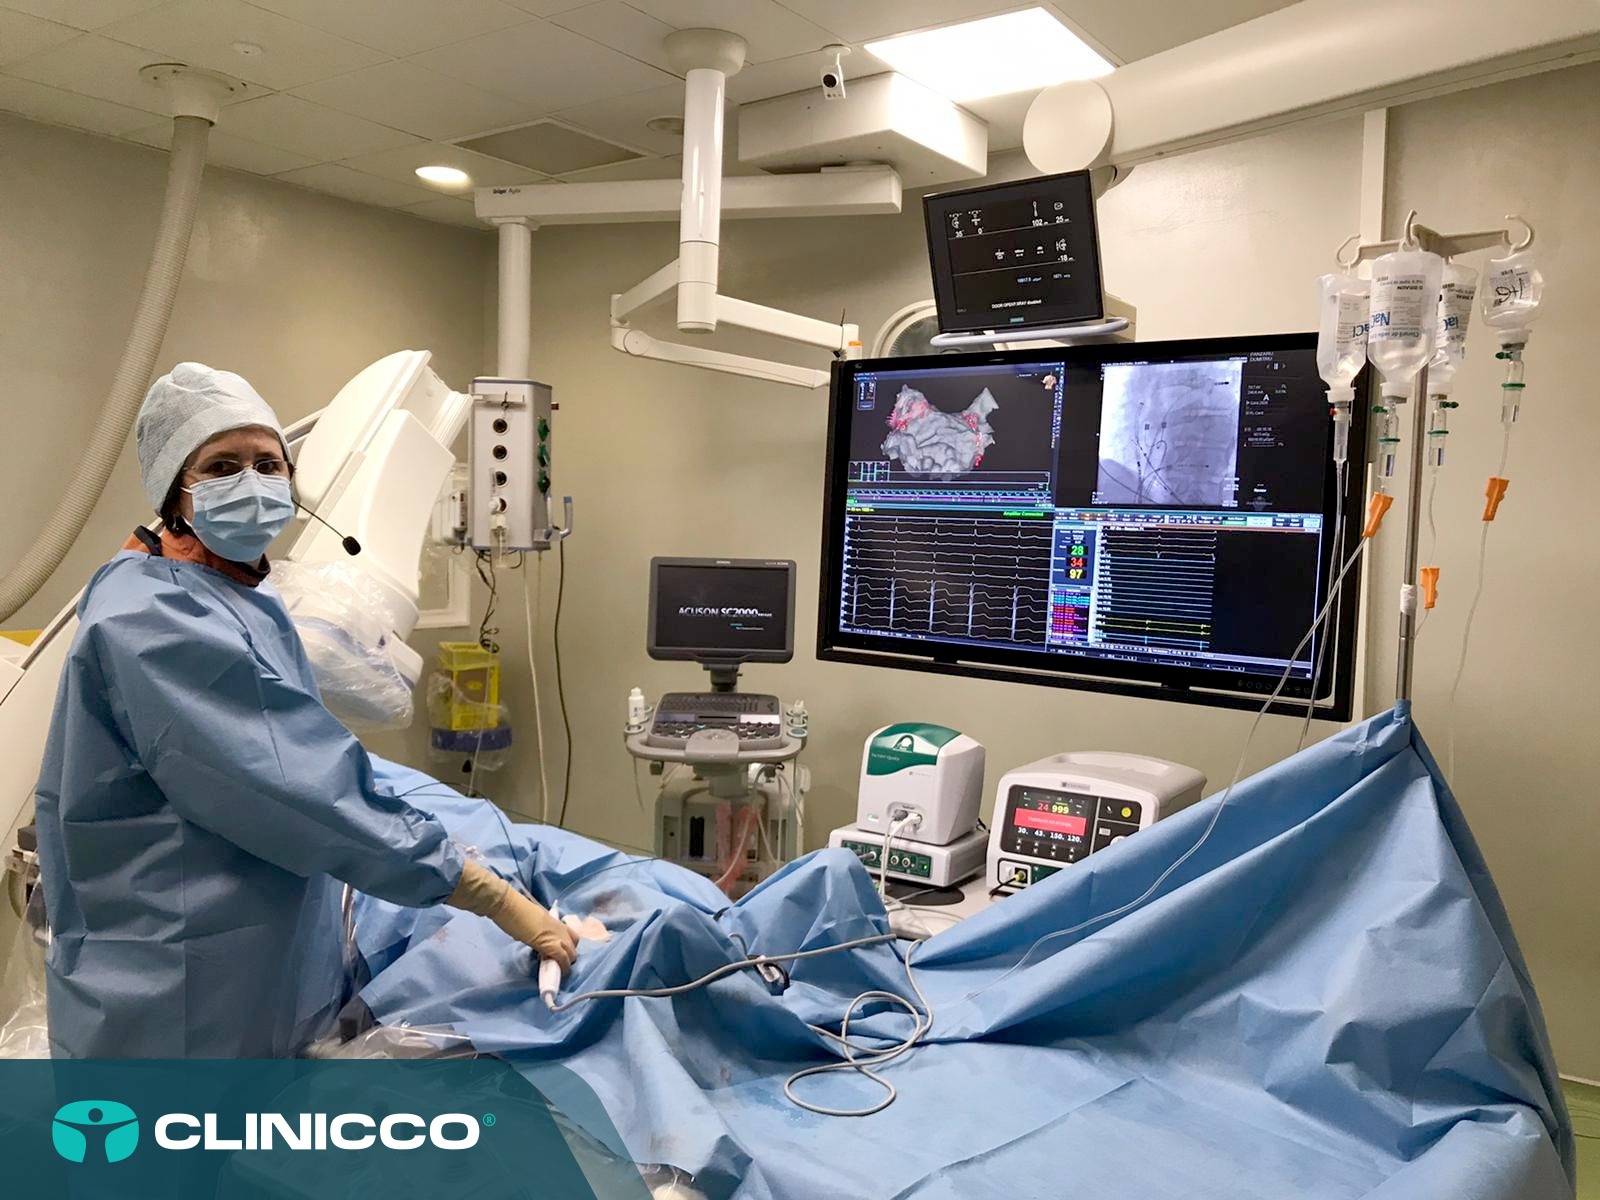 Clinicco marchează Săptămâna Mondială a Conștientizării Fibrilației Atriale prin efectuarea cu succes a două noi proceduri ablative de izolare a venelor pulmonare la pacienți cu fibrilație atrială